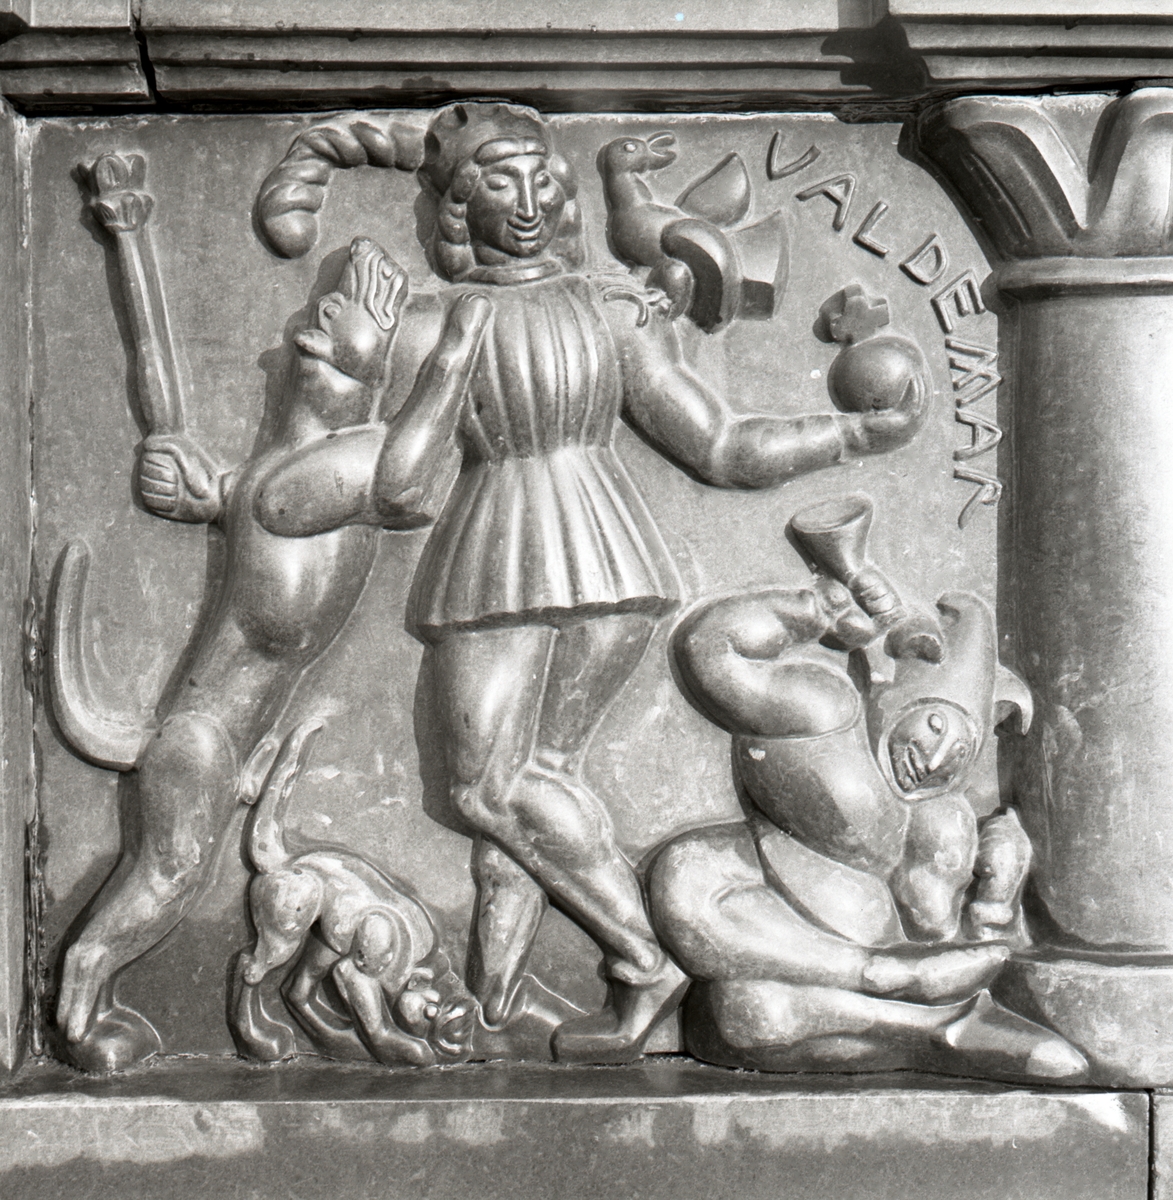 Detalj av sockeln på Folkungabrunnen: Valdemar kung 1250 - 1275 - reliefen visar hur kung Valdemar leker bekymmerslös med spira och riksäpple.
Folkungabrunnen med Folke Filbyter, skulpturen uppförd av Carl Milles, invigdes 1927. Inspirationskälla till detta verk var Verner von Heidenstams roman Folkungaträdet, där Folkungaättens undergång skildras. Folke Filbyter - ättens stamfader - avbildas, när han till häst letar efter sin bortrövade sonson. Det 16 meter långa brunnskaret i svart granit, fungerande som en barriär mellan torget och gatan, återger med sina reliefer episoder ur Folkungatidens historia.